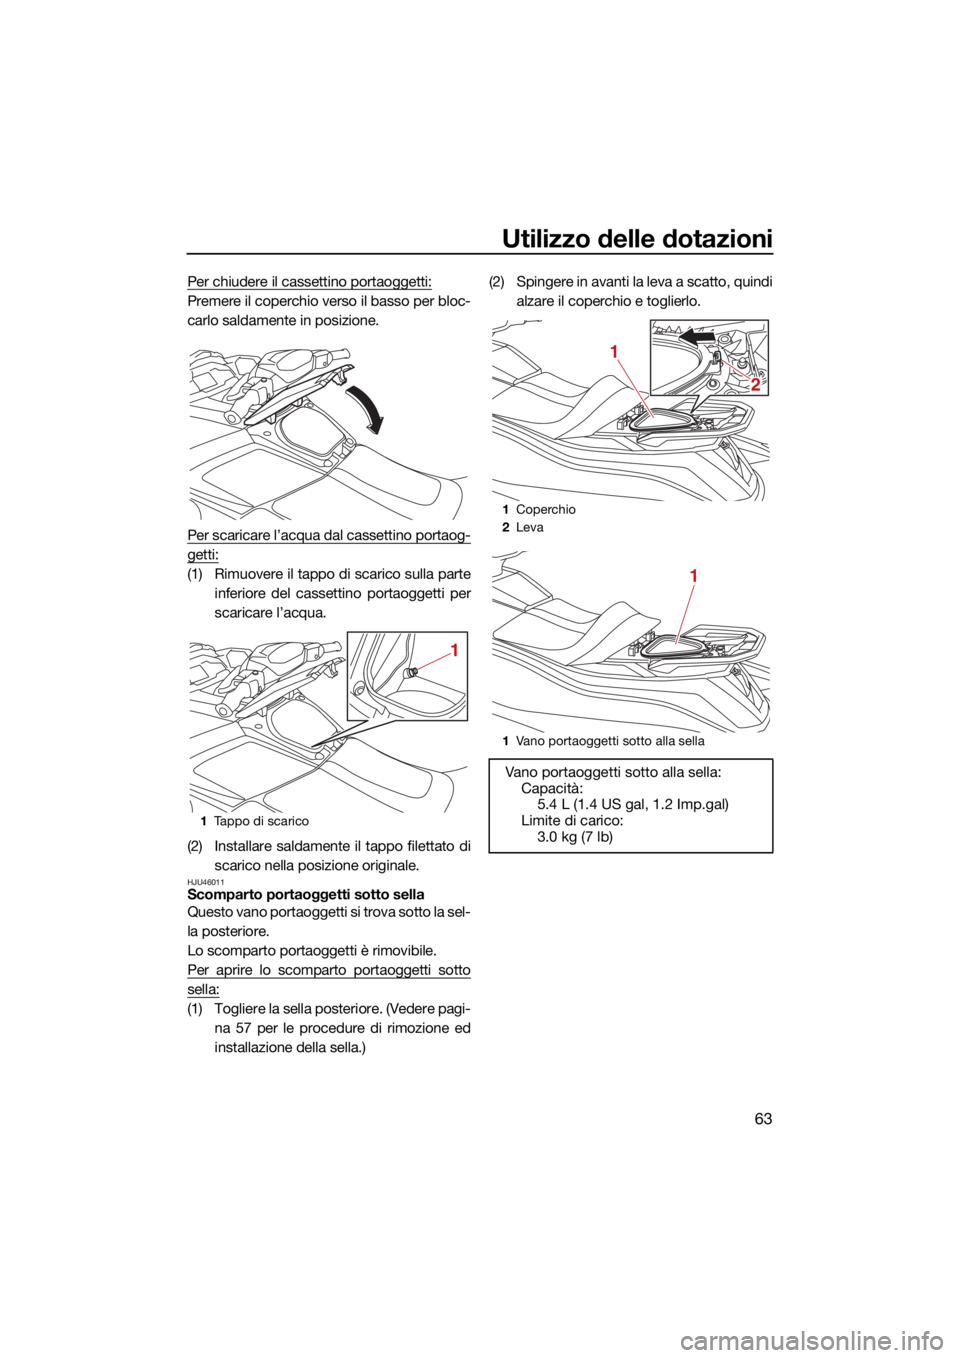 YAMAHA VX 2021  Manuale duso (in Italian) Utilizzo delle dotazioni
63
Per chiudere il cassettino portaoggetti:
Premere il coperchio verso il basso per bloc-
carlo saldamente in posizione.
Per scaricare l’acqua dal cassettino portaog-
getti: